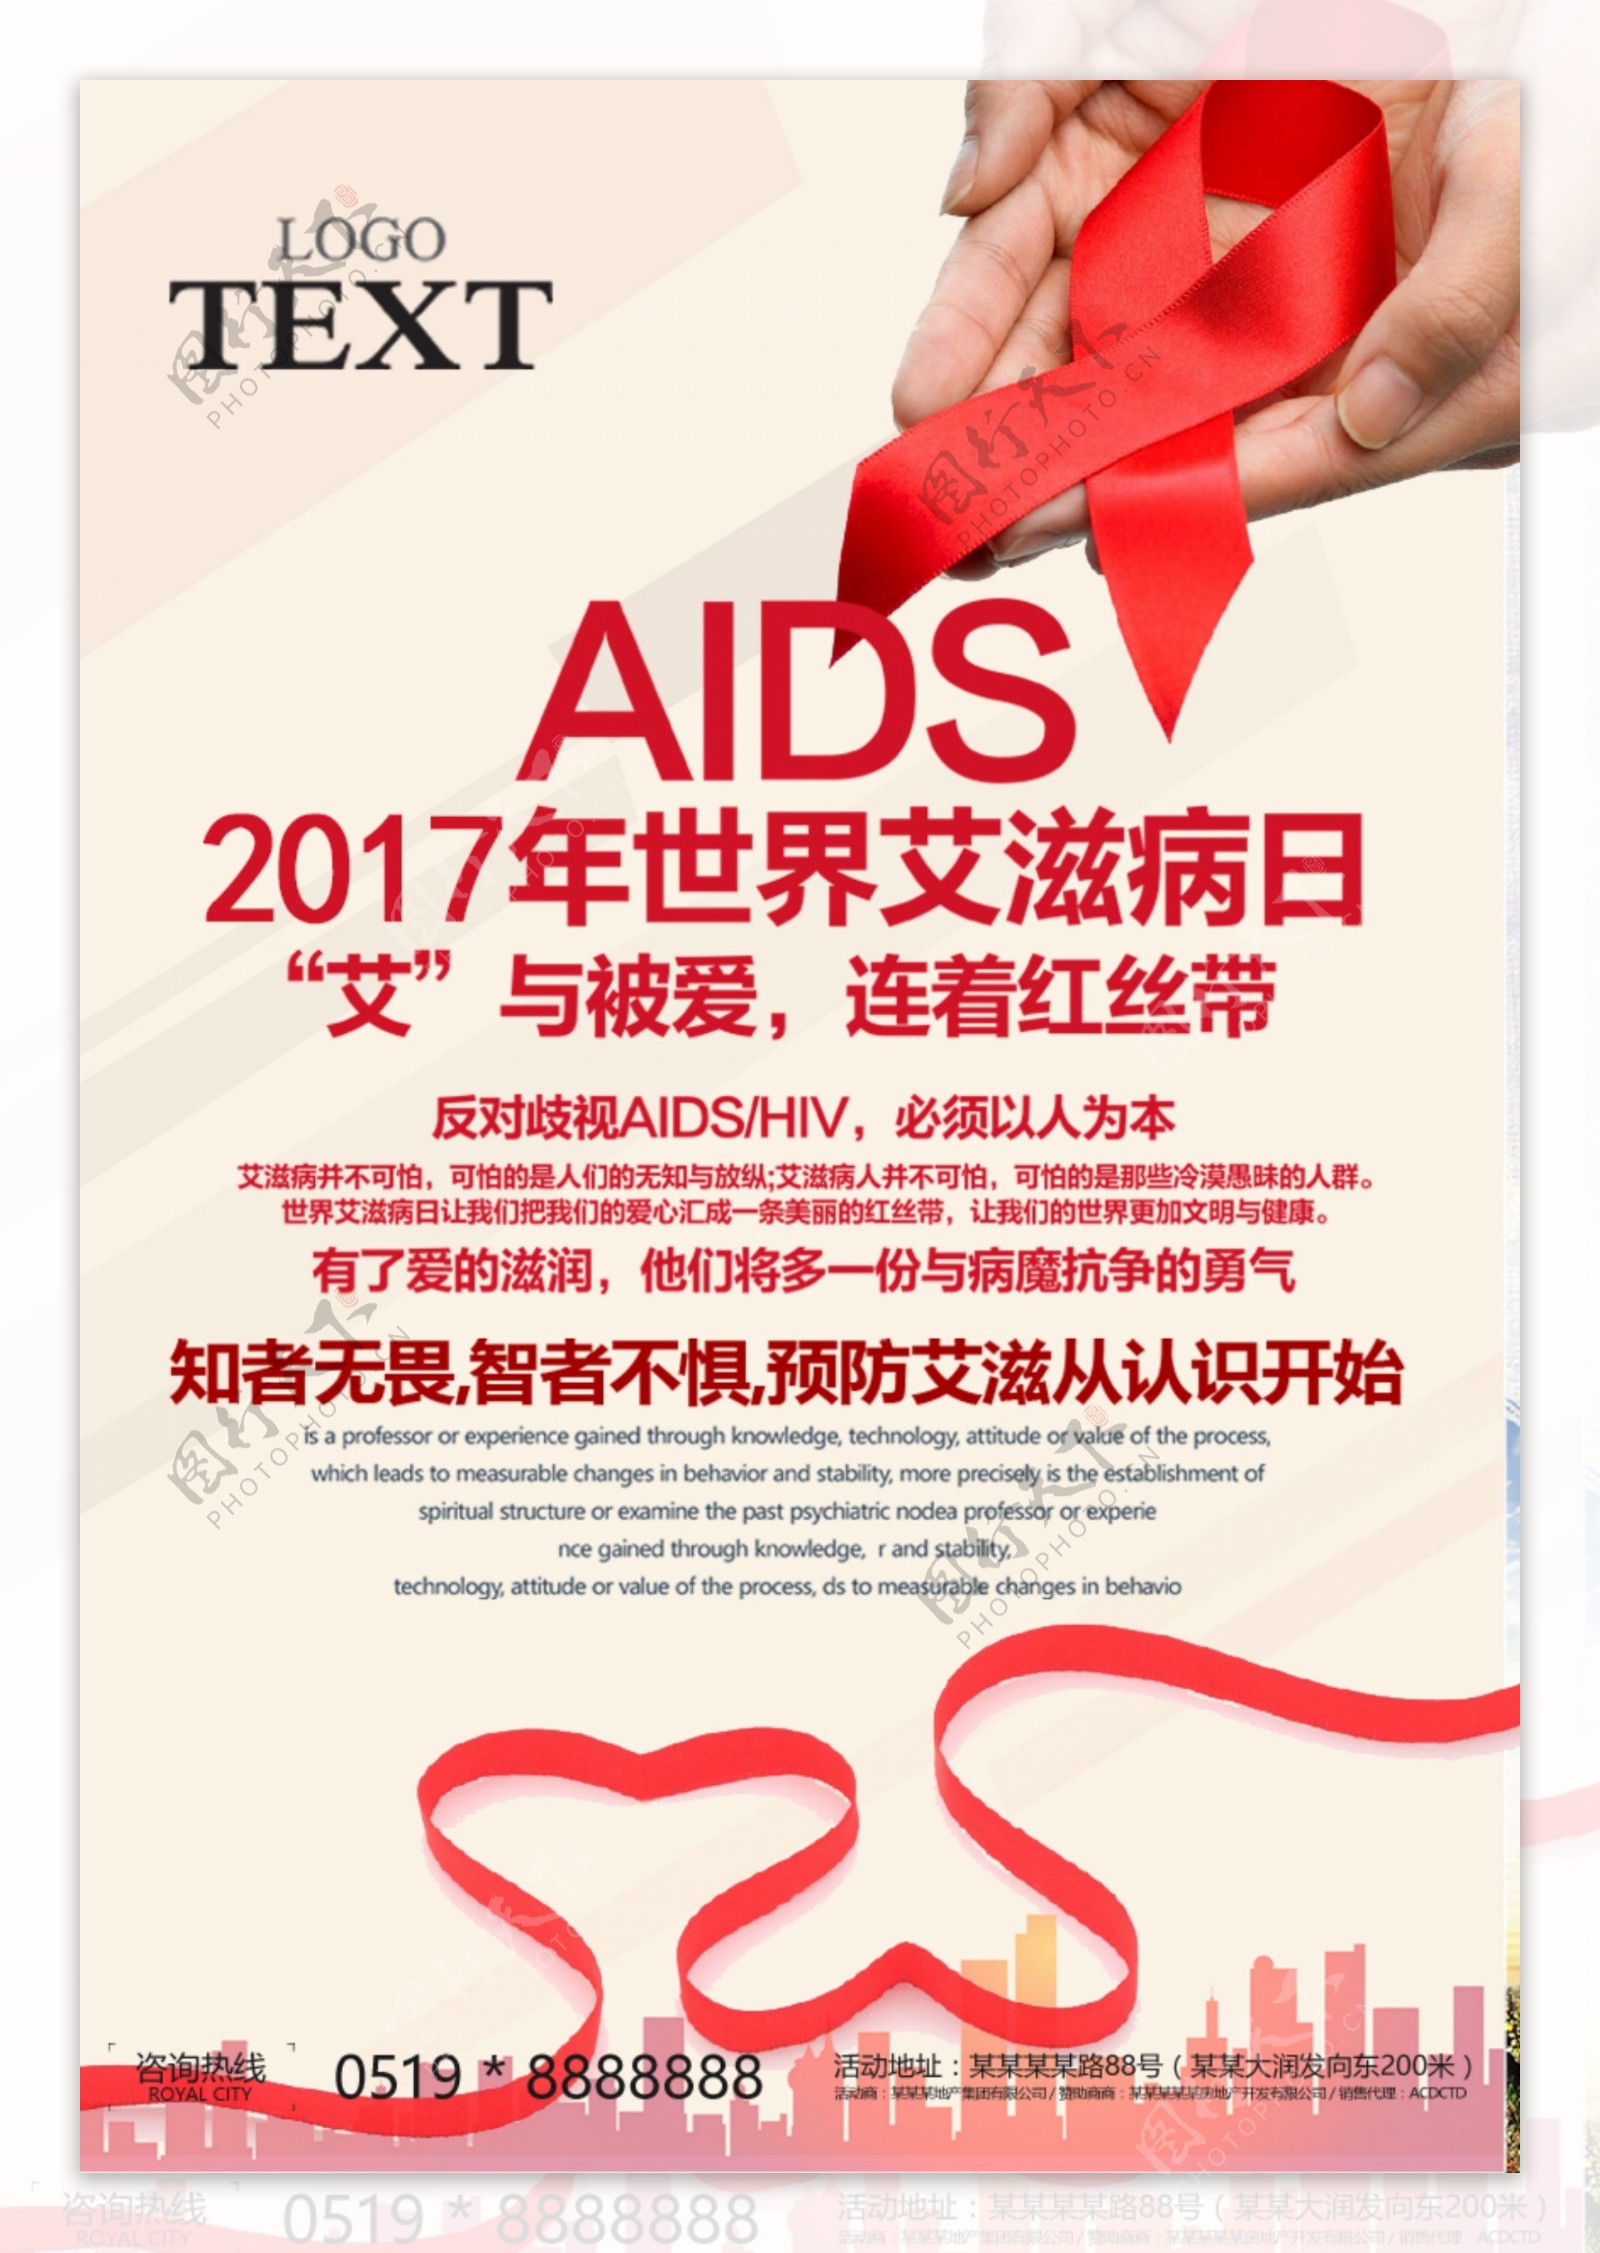 艾滋病预防防范宣传海报设计